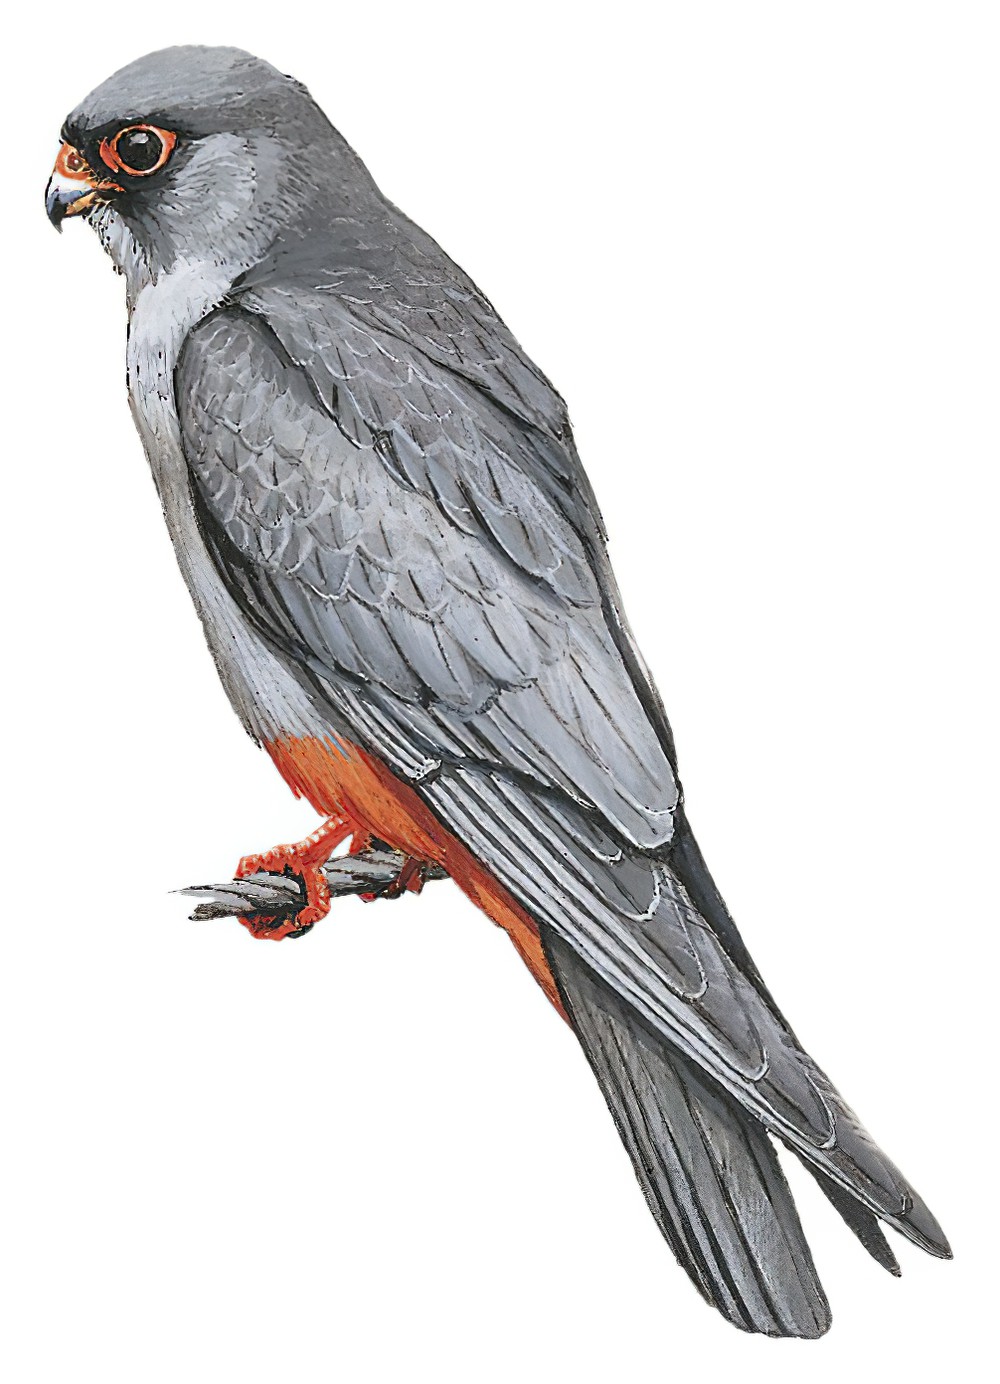 Red-footed Falcon / Falco vespertinus